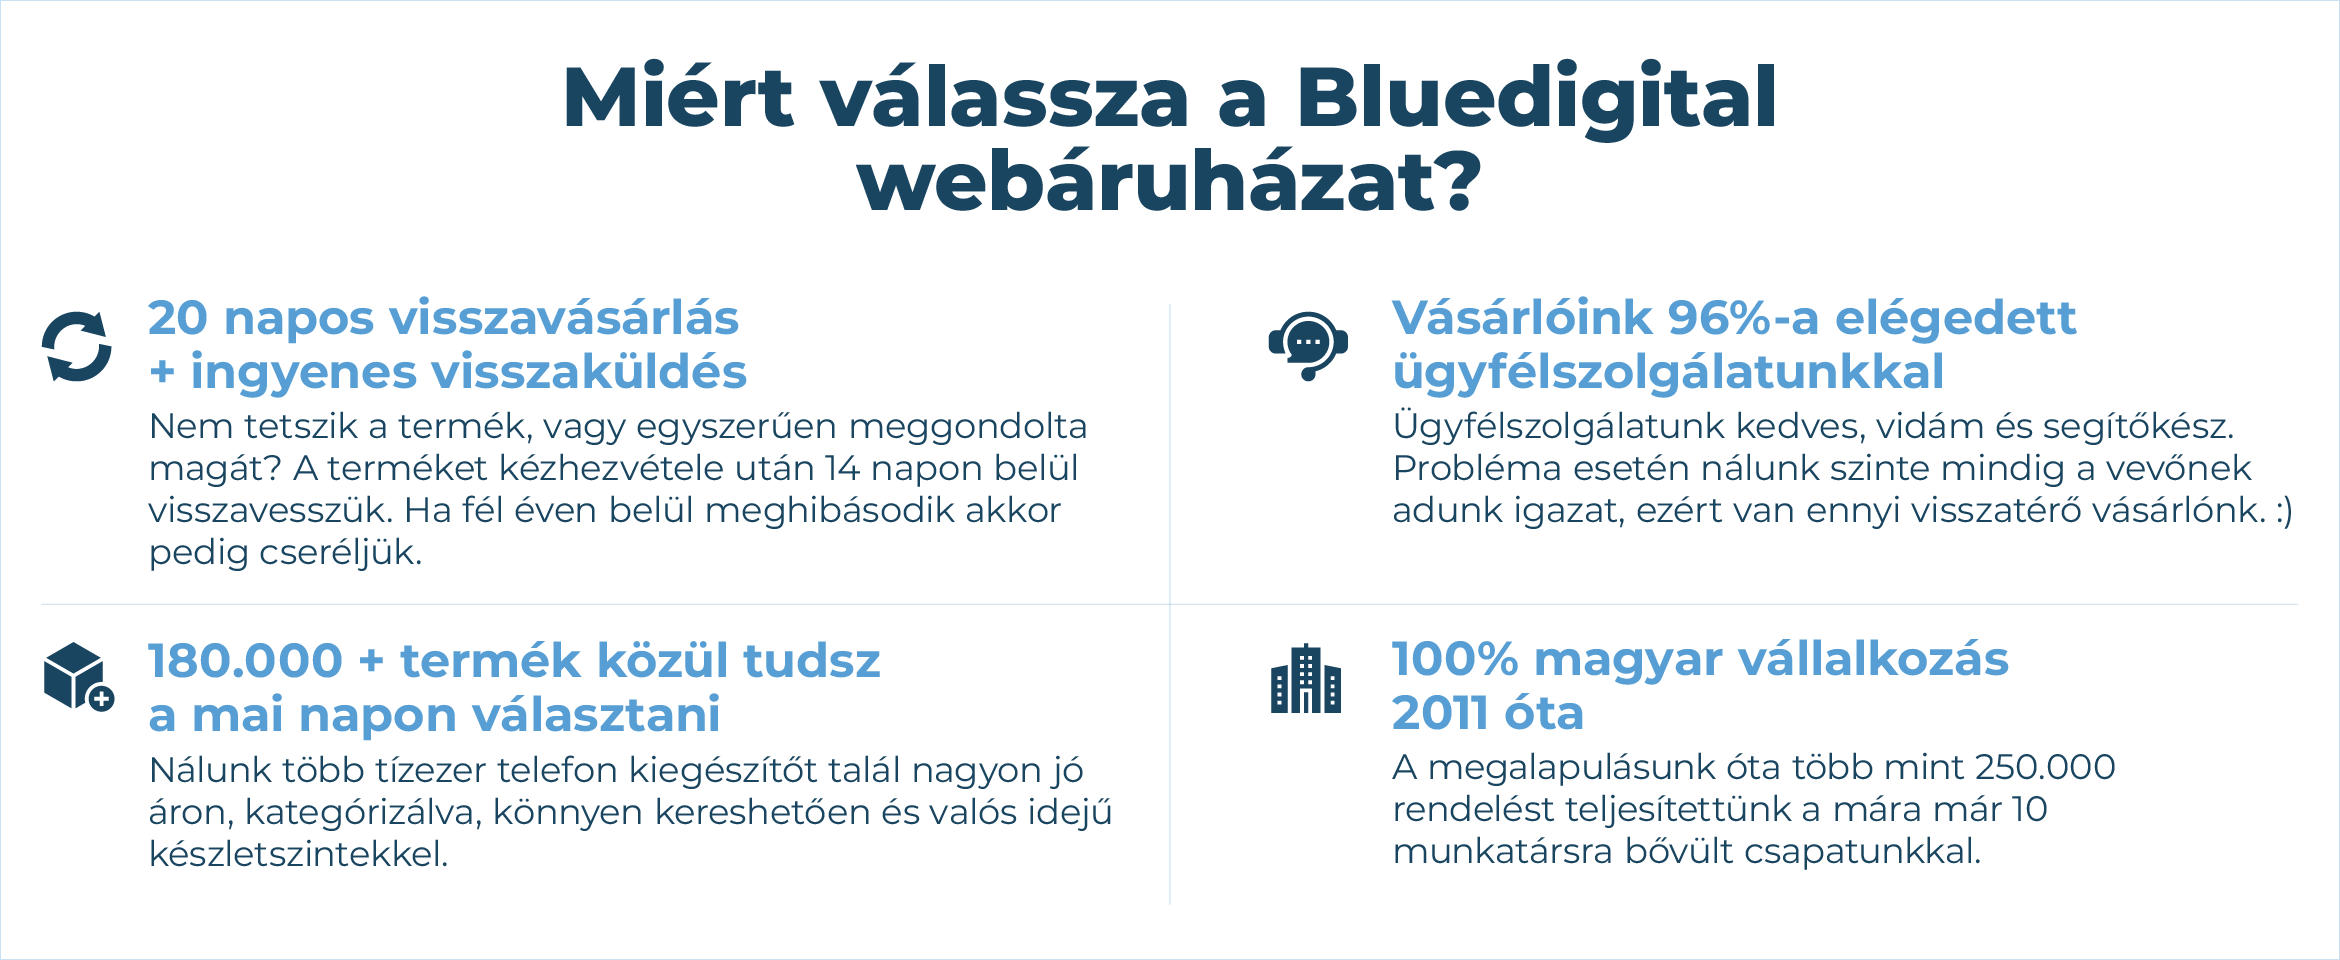 Miért válassza a Bluedigital webáruházat?